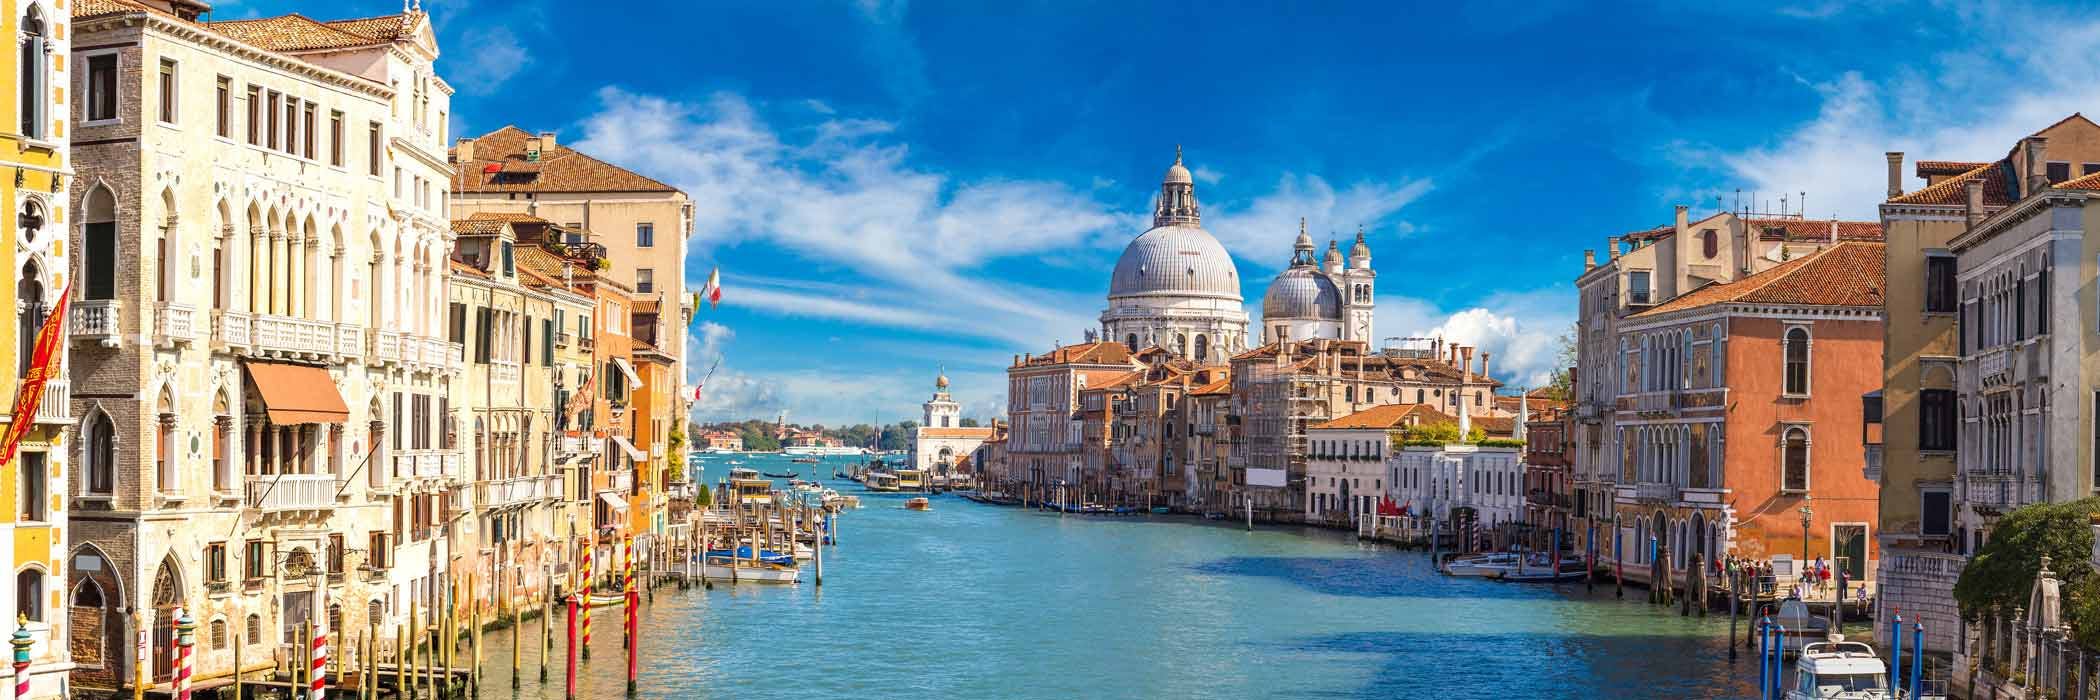 Flights To Venice Italy